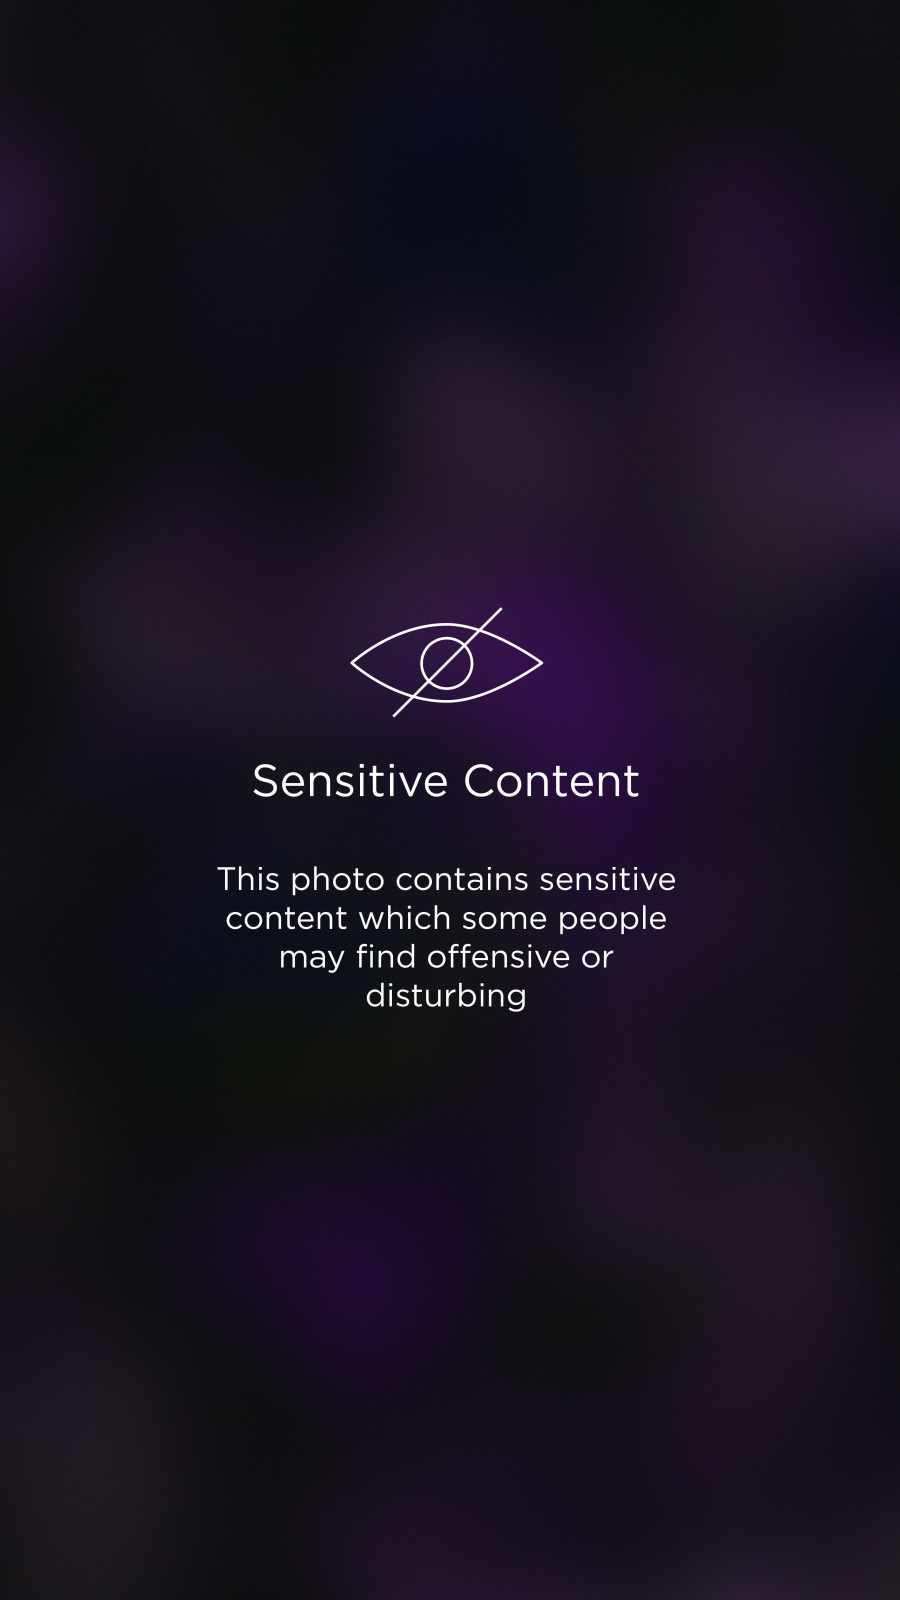 Sensitive Content iPhone Wallpaper